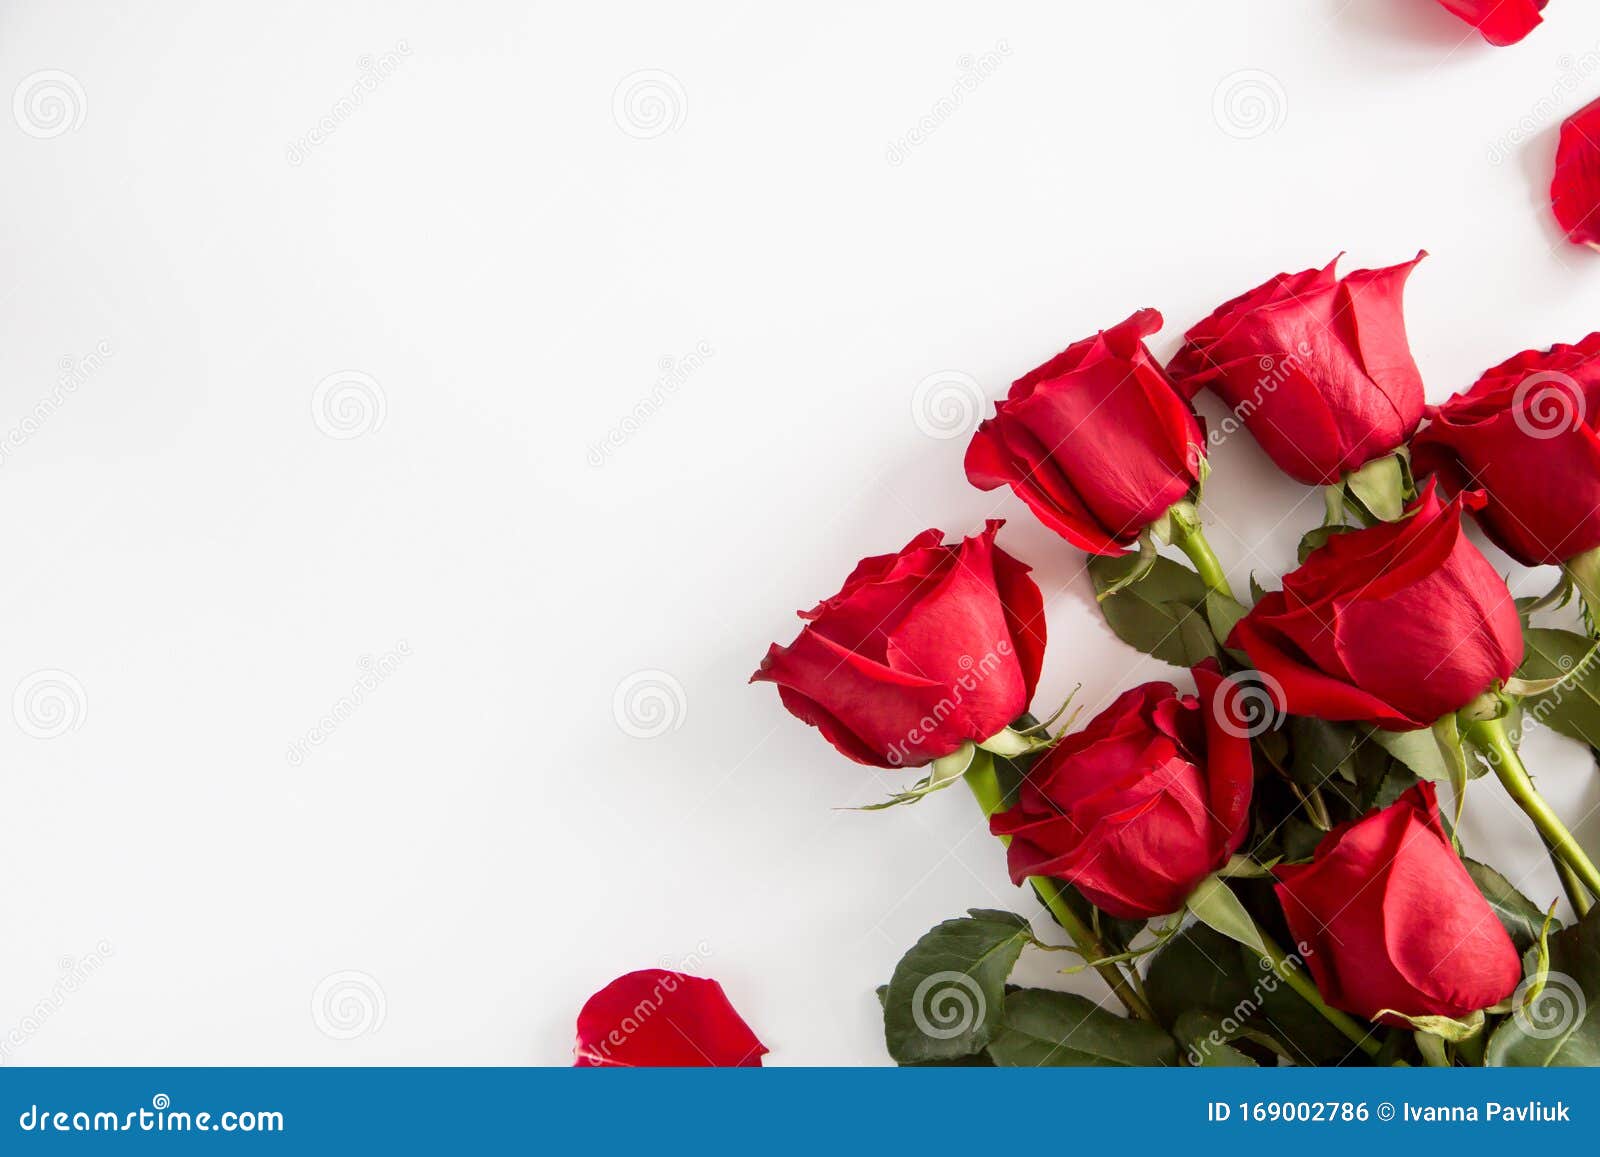 Hoa hồng đỏ là biểu tượng về tình yêu và lòng trung thành. Hãy cùng chiêm ngưỡng những hình ảnh tuyệt đẹp về những bông hoa hồng đỏ thơm ngát, tinh khôi và lãng mạn trên trang web của chúng tôi. Điều đó sẽ khiến trái tim bạn nóng cháy.